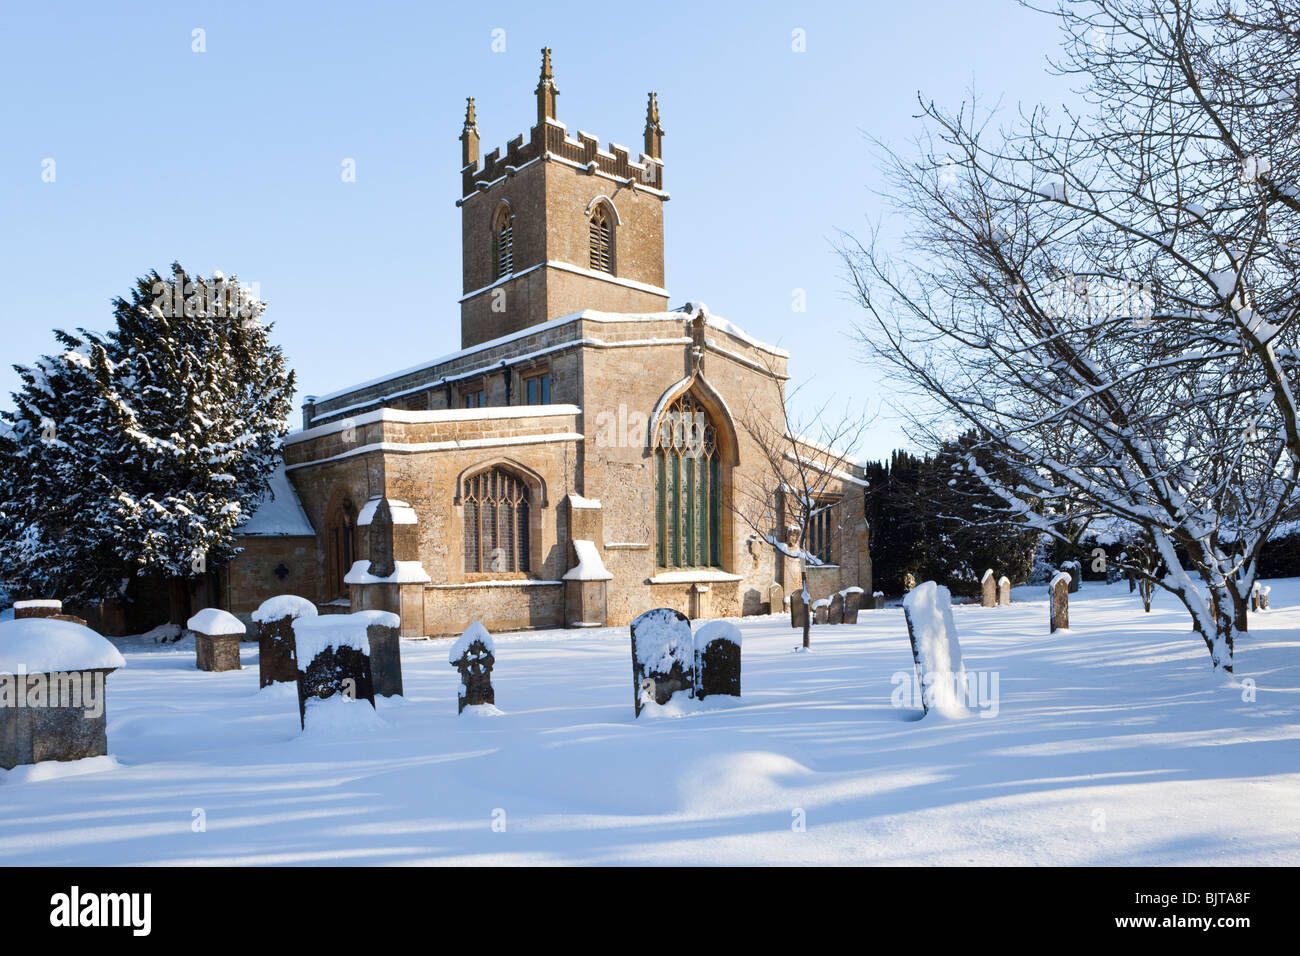 Winterschnee auf der St. Edwards Church in der Cotswold-Stadt Stow on the Wold, Gloucestershire, Großbritannien - Hinweis: „DIESES BILD DARF NICHT ALS BUCHCOVER LIZENZIERT werden“ Stockfoto